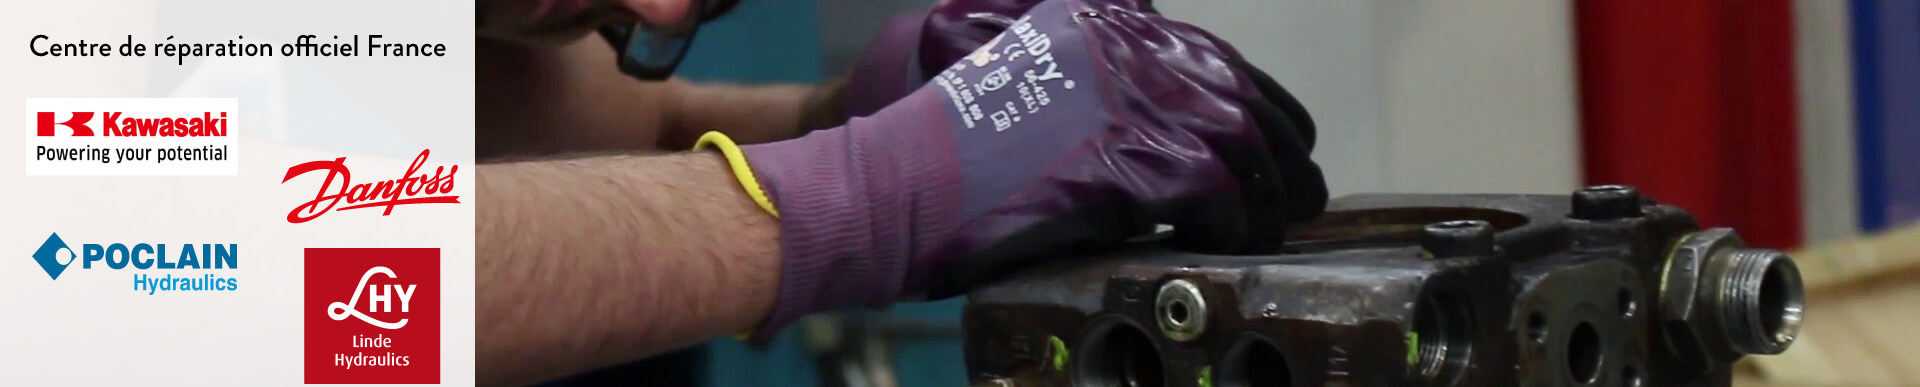 Un technicien en train de réparer une pompe à pistons hydrauliques